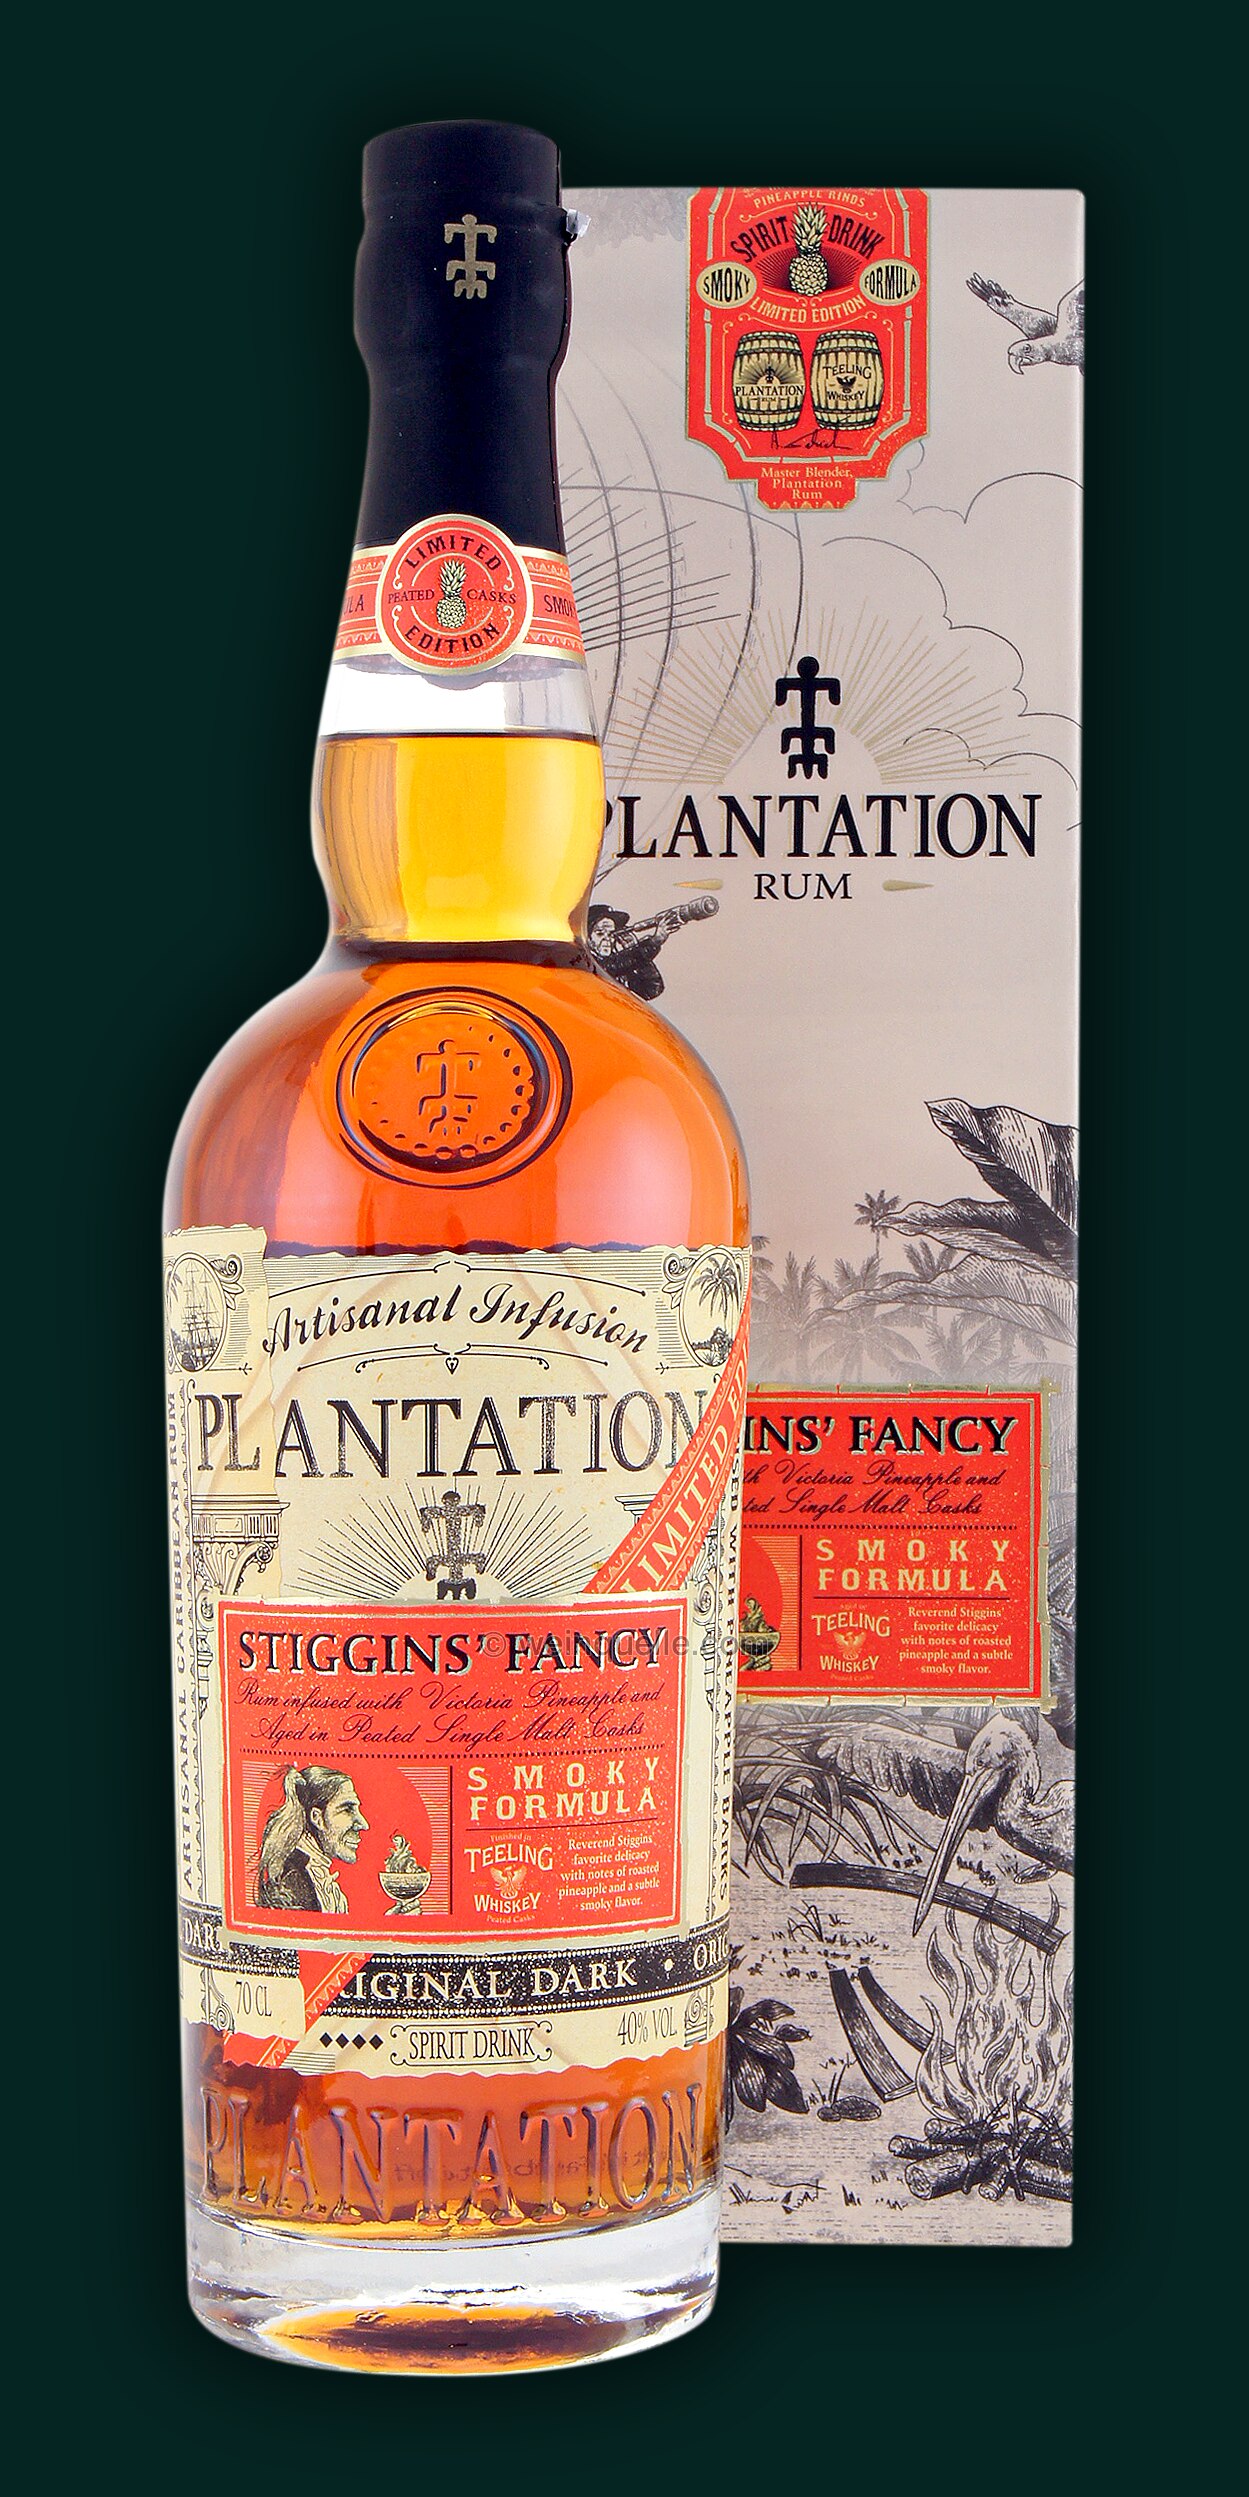 Plantation Pineapple Stiggins Fancy Smoky Lühmann Weinquelle - Formula